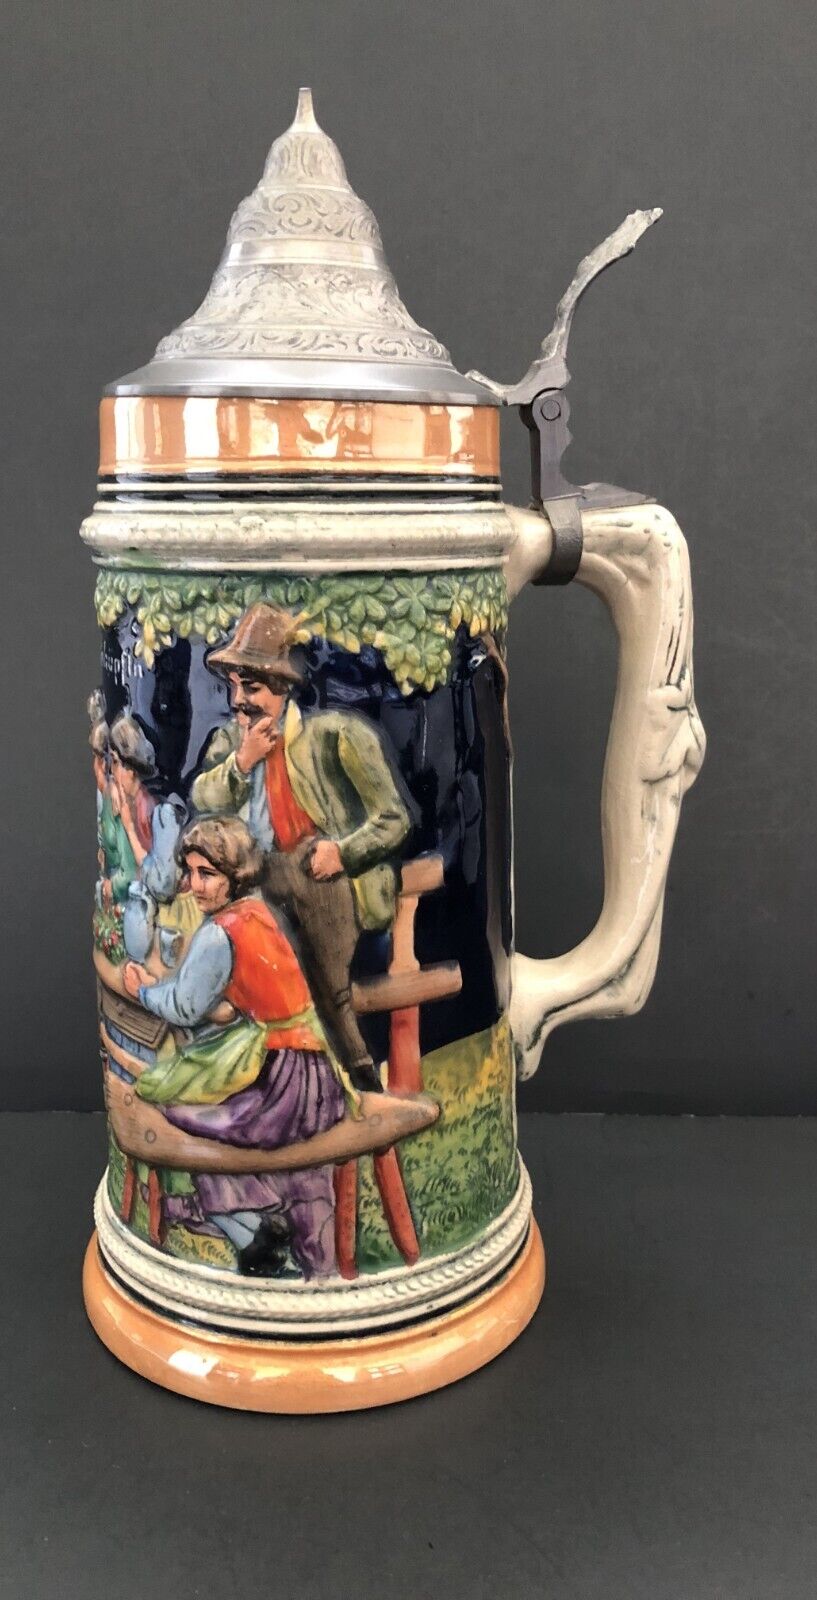 Vintage German Ceramic Beer Stein Mug #493 w/Pewter Lid: Approx. 11.5